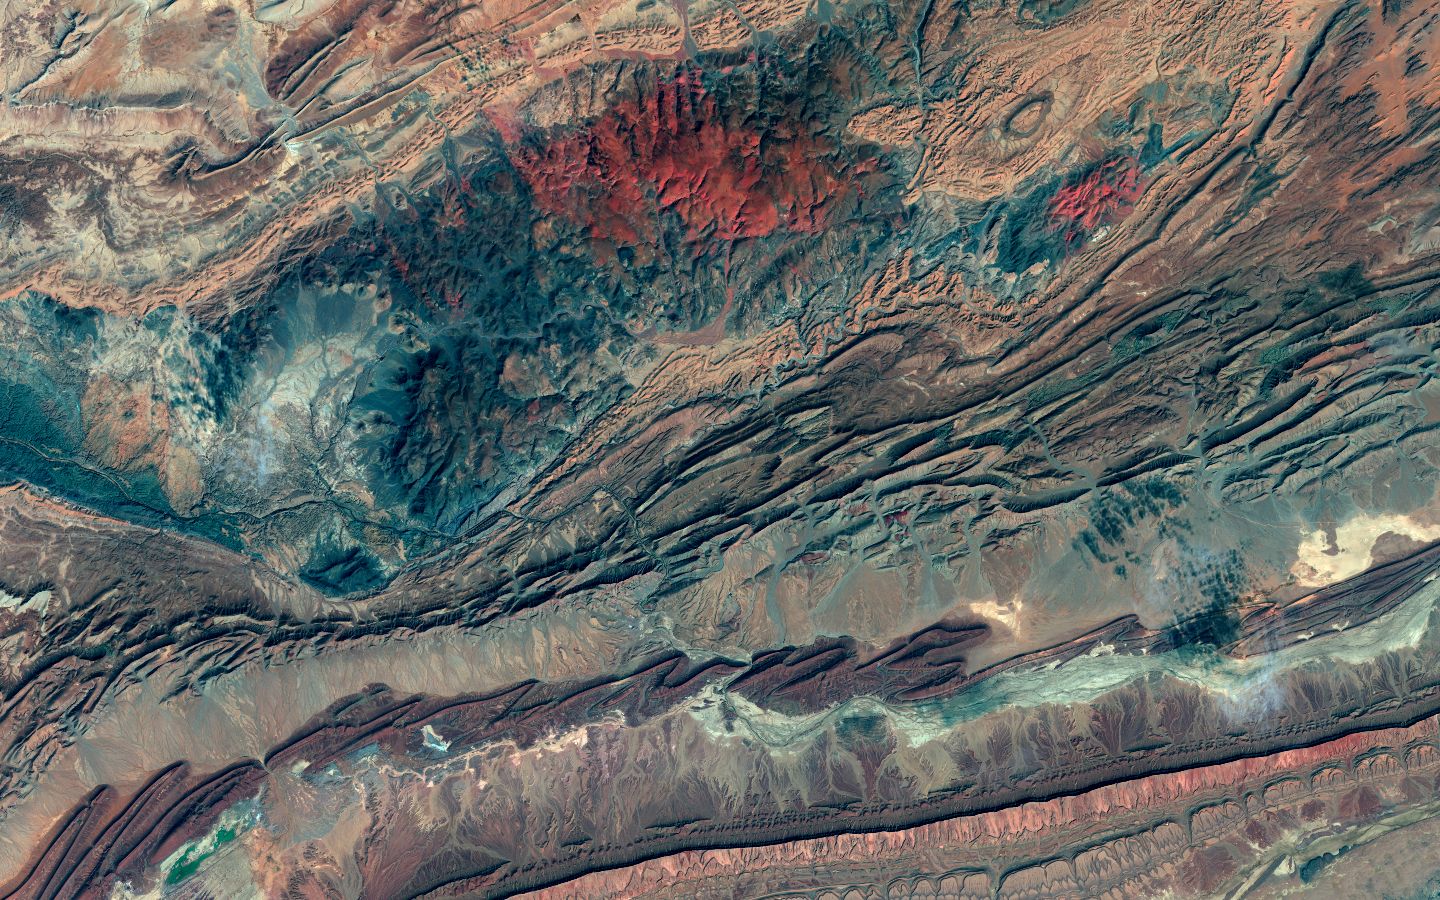 Anti-Atlas Range, Morocco